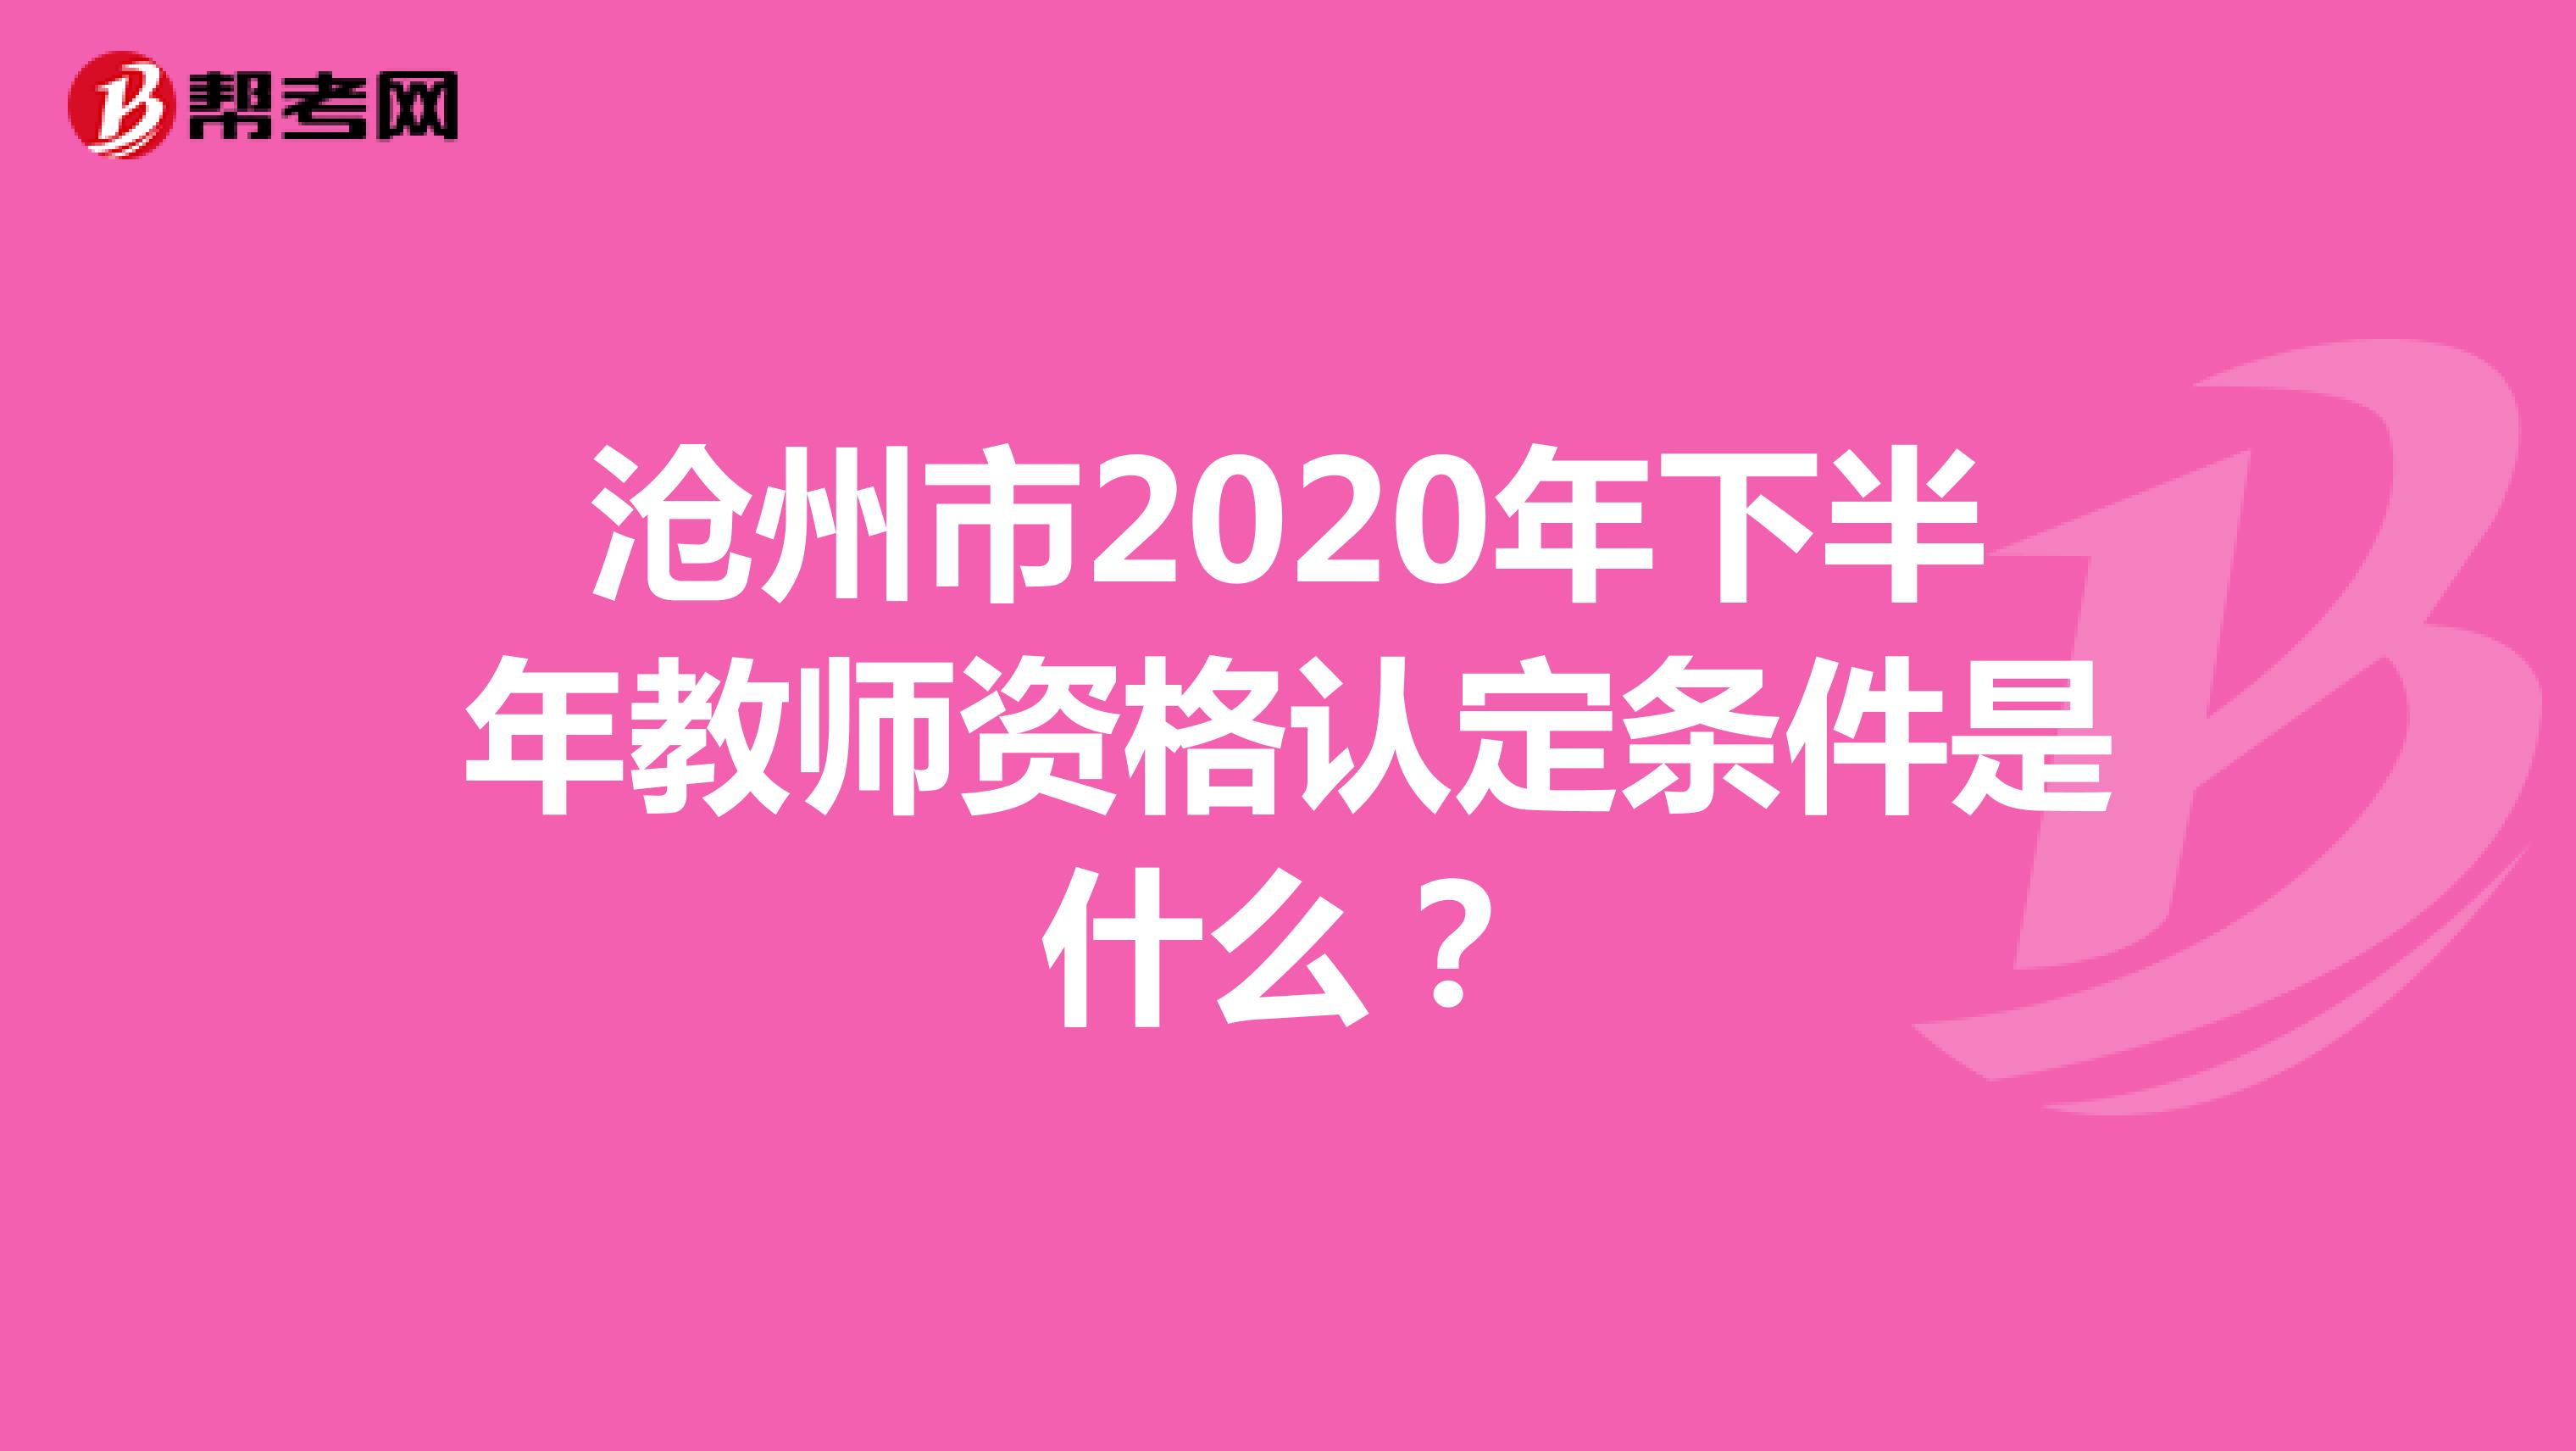 沧州市2020年下半年教师资格认定条件是什么？